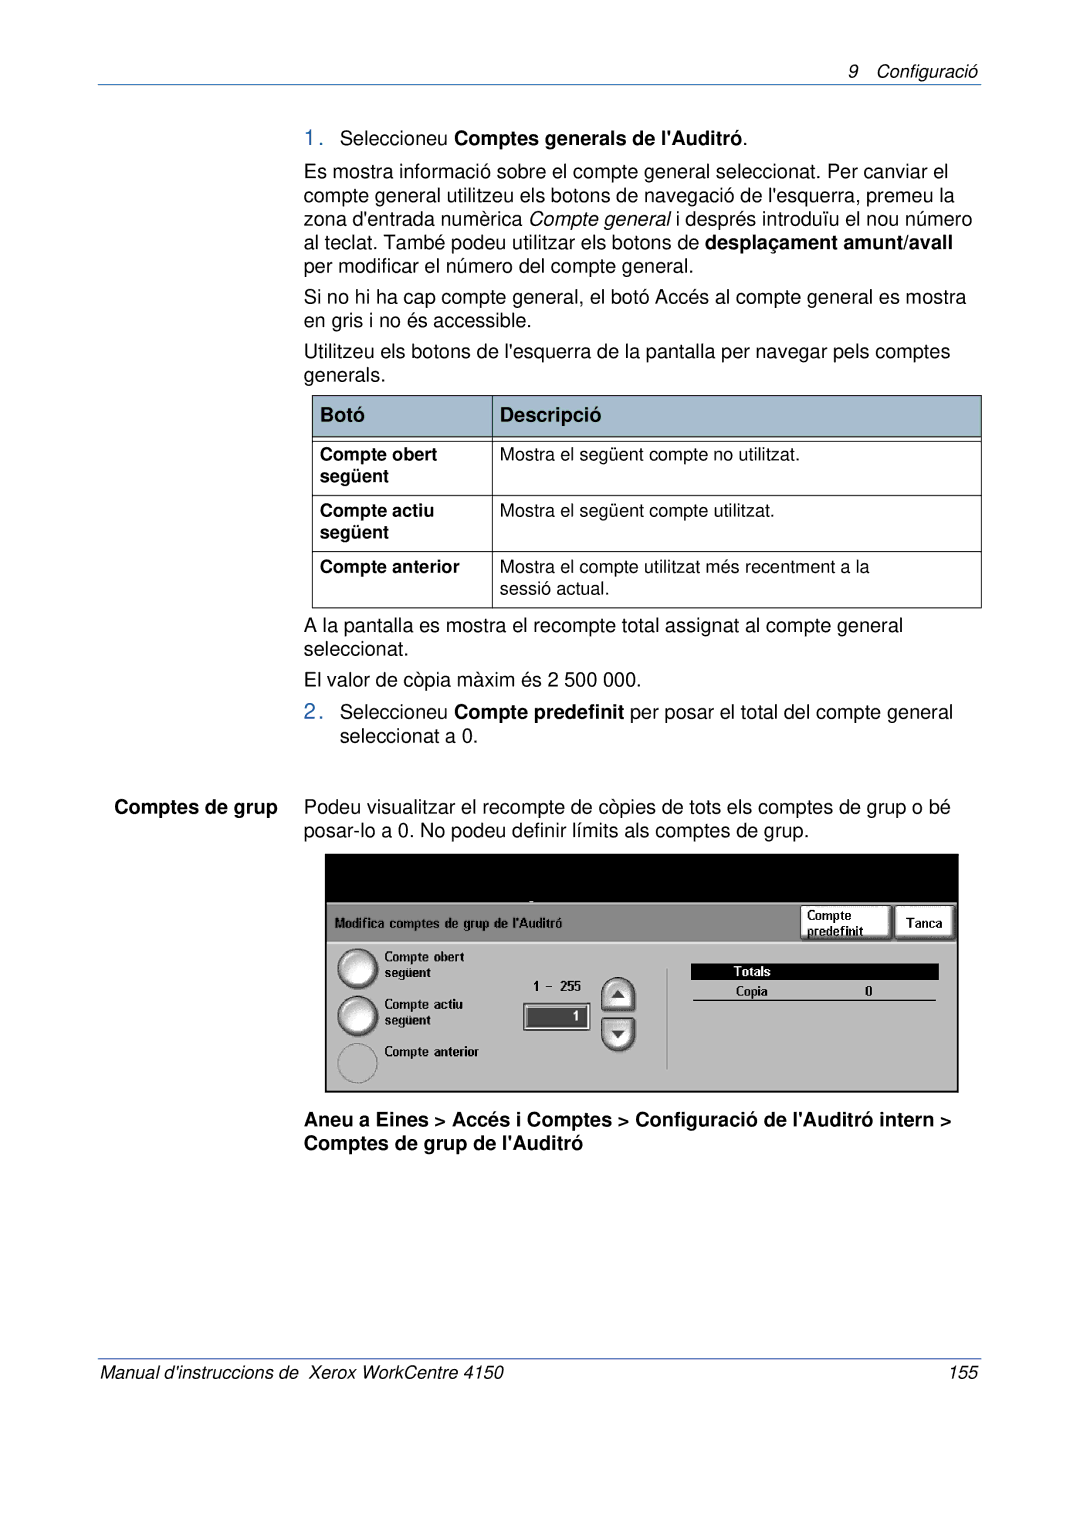 Xerox 5.0 24.03.06 manual Seleccioneu Comptes generals de lAuditró 